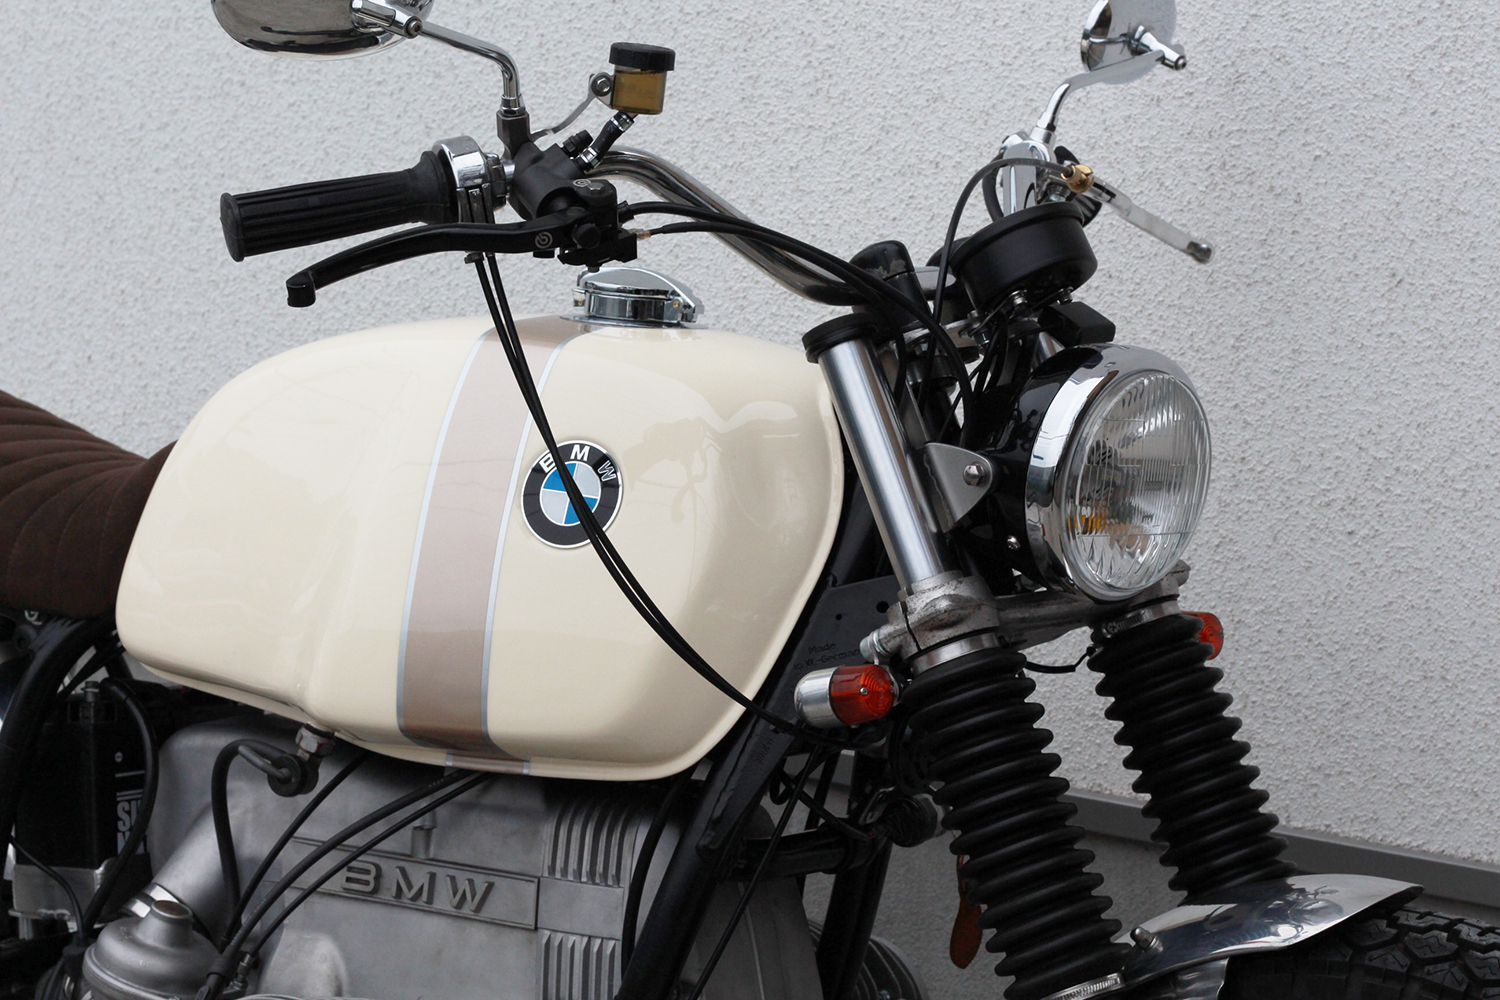 BMW R100 ツインショック カスタム 79年式 | outLoud motorcycle BMW R100